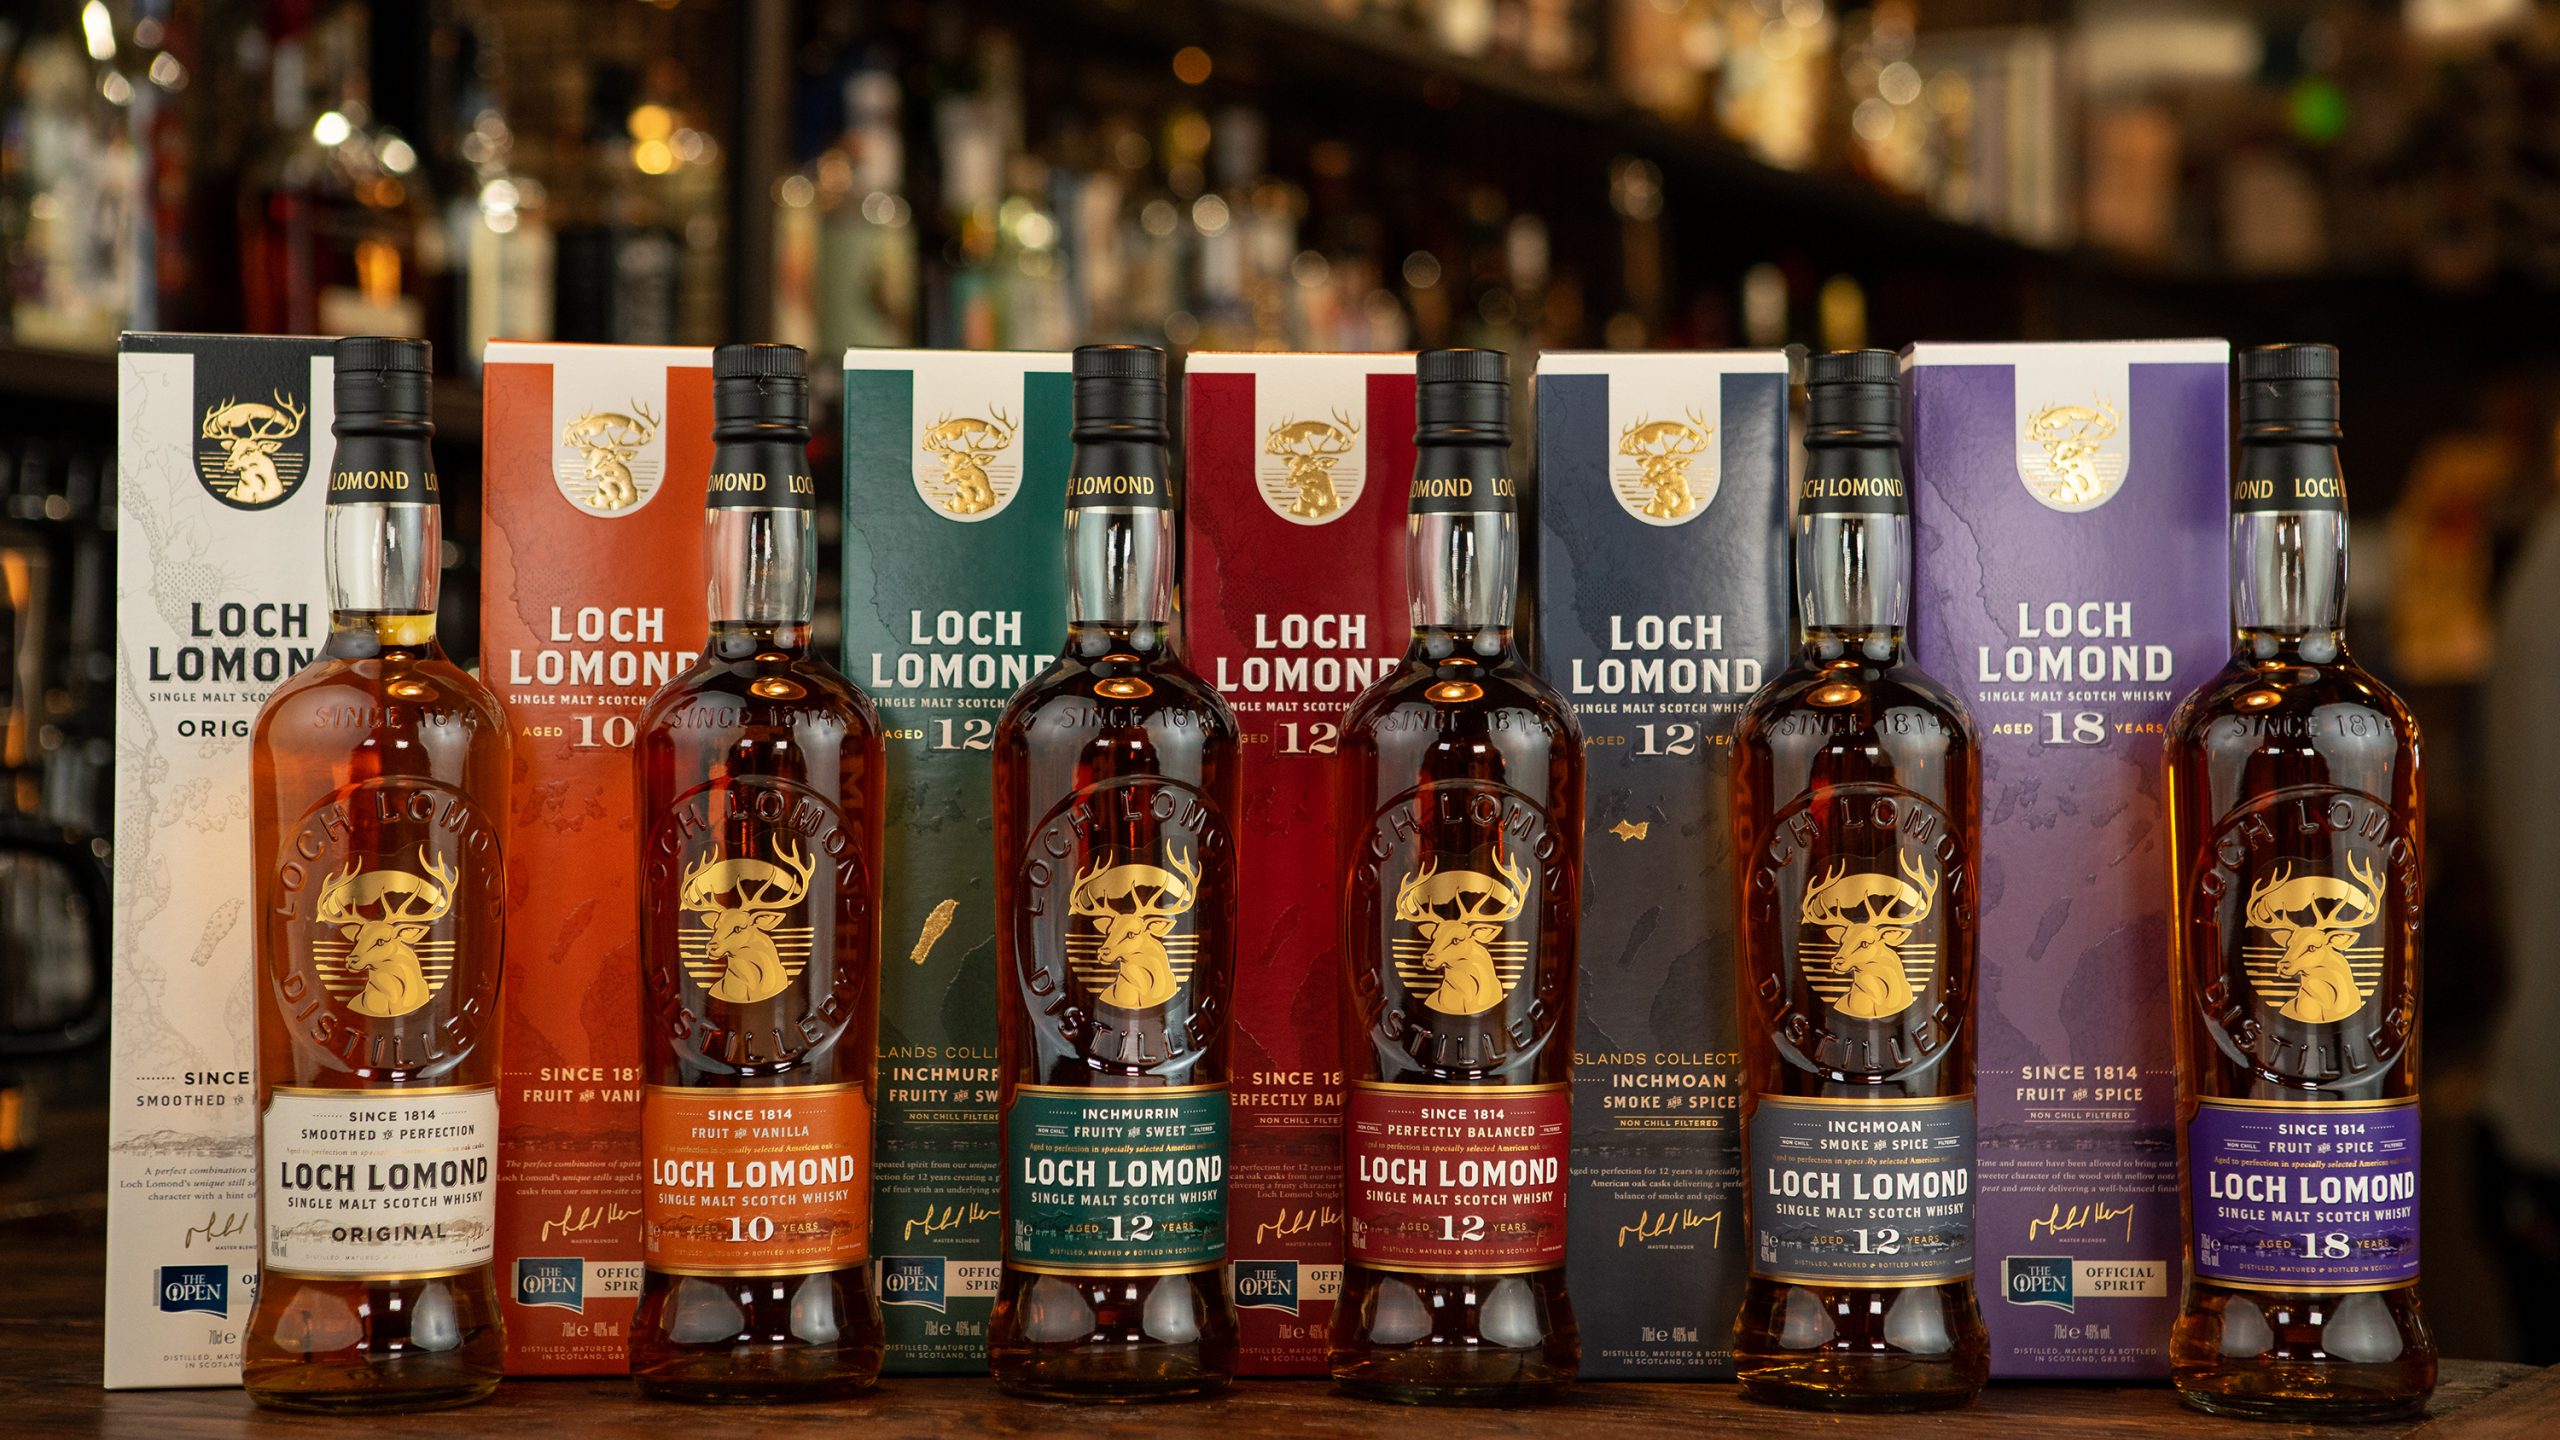 Loch Lomond Whiskies refresh